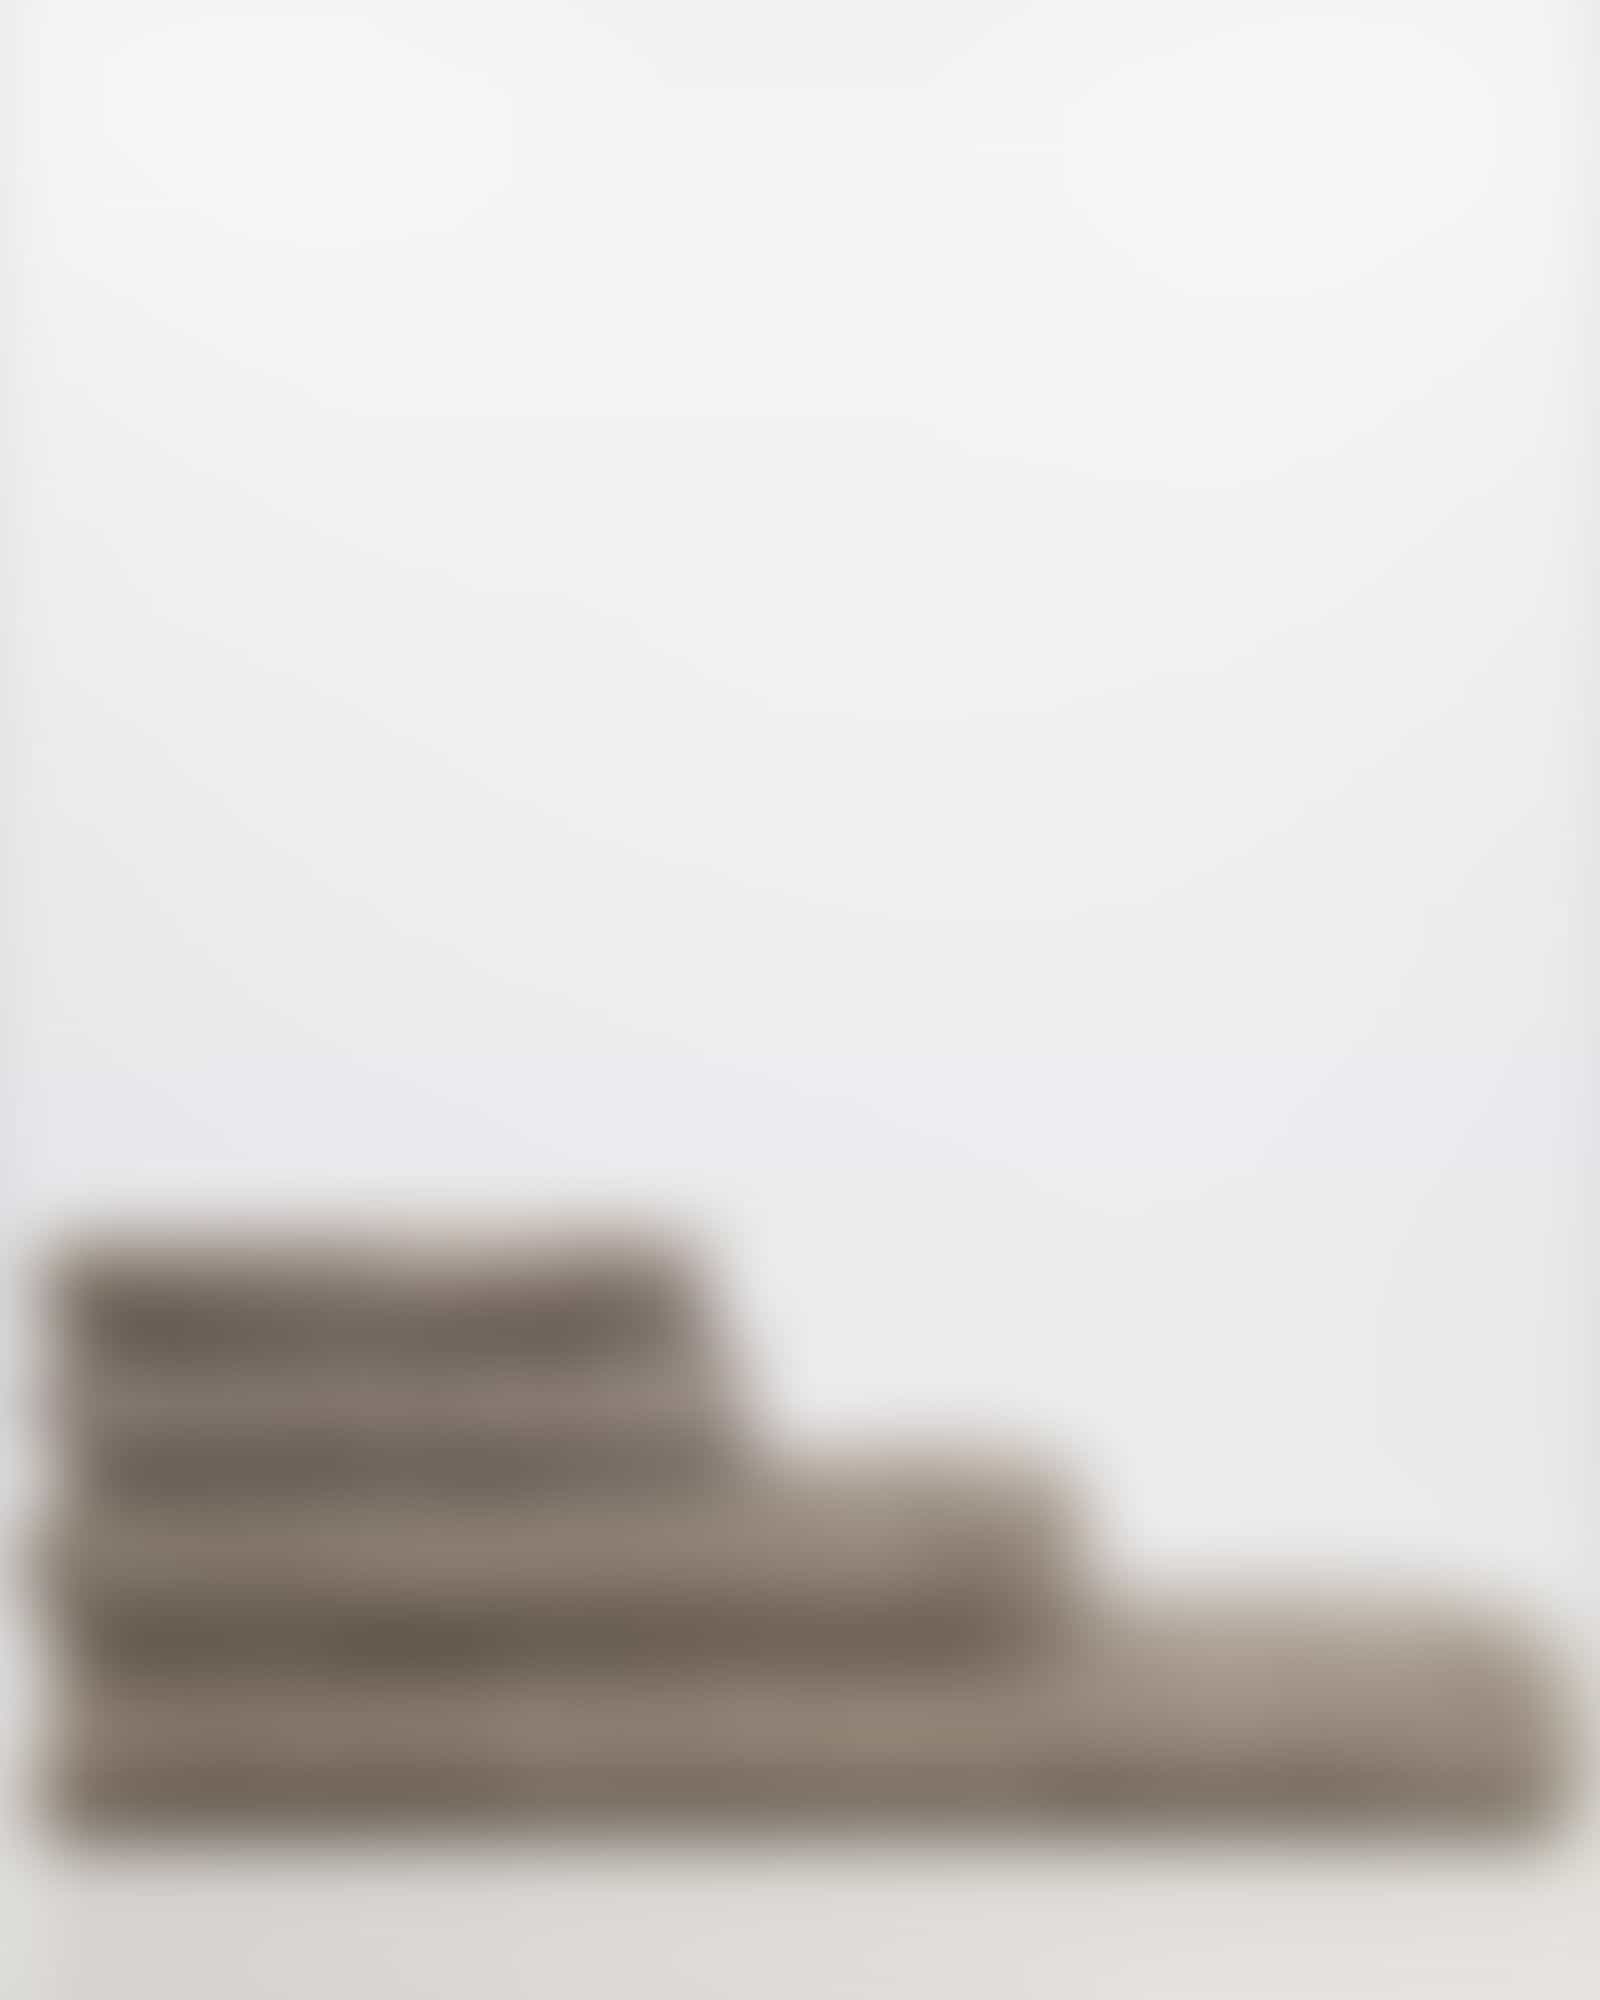 JOOP Uni Cornflower 1670 - Farbe: Graphit - 779 - Duschtuch 80x150 cm Detailbild 3